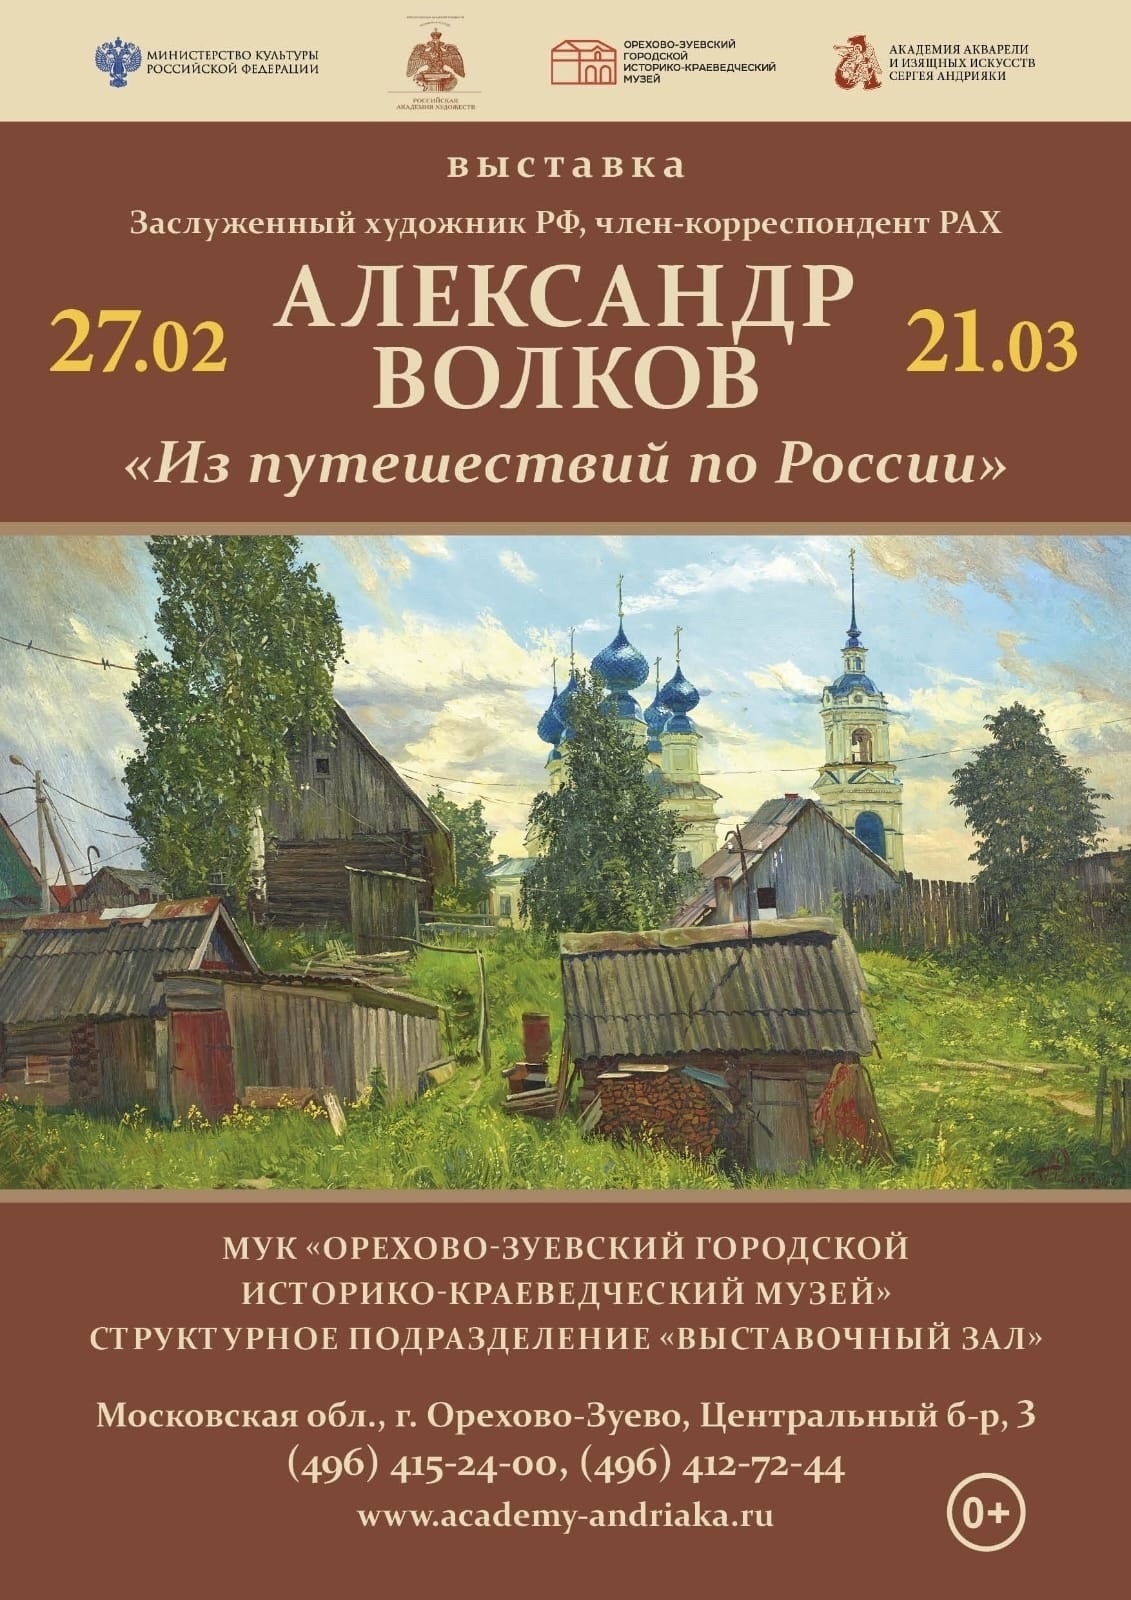 Выставка А.П. Волкова «Из путешествий по России»